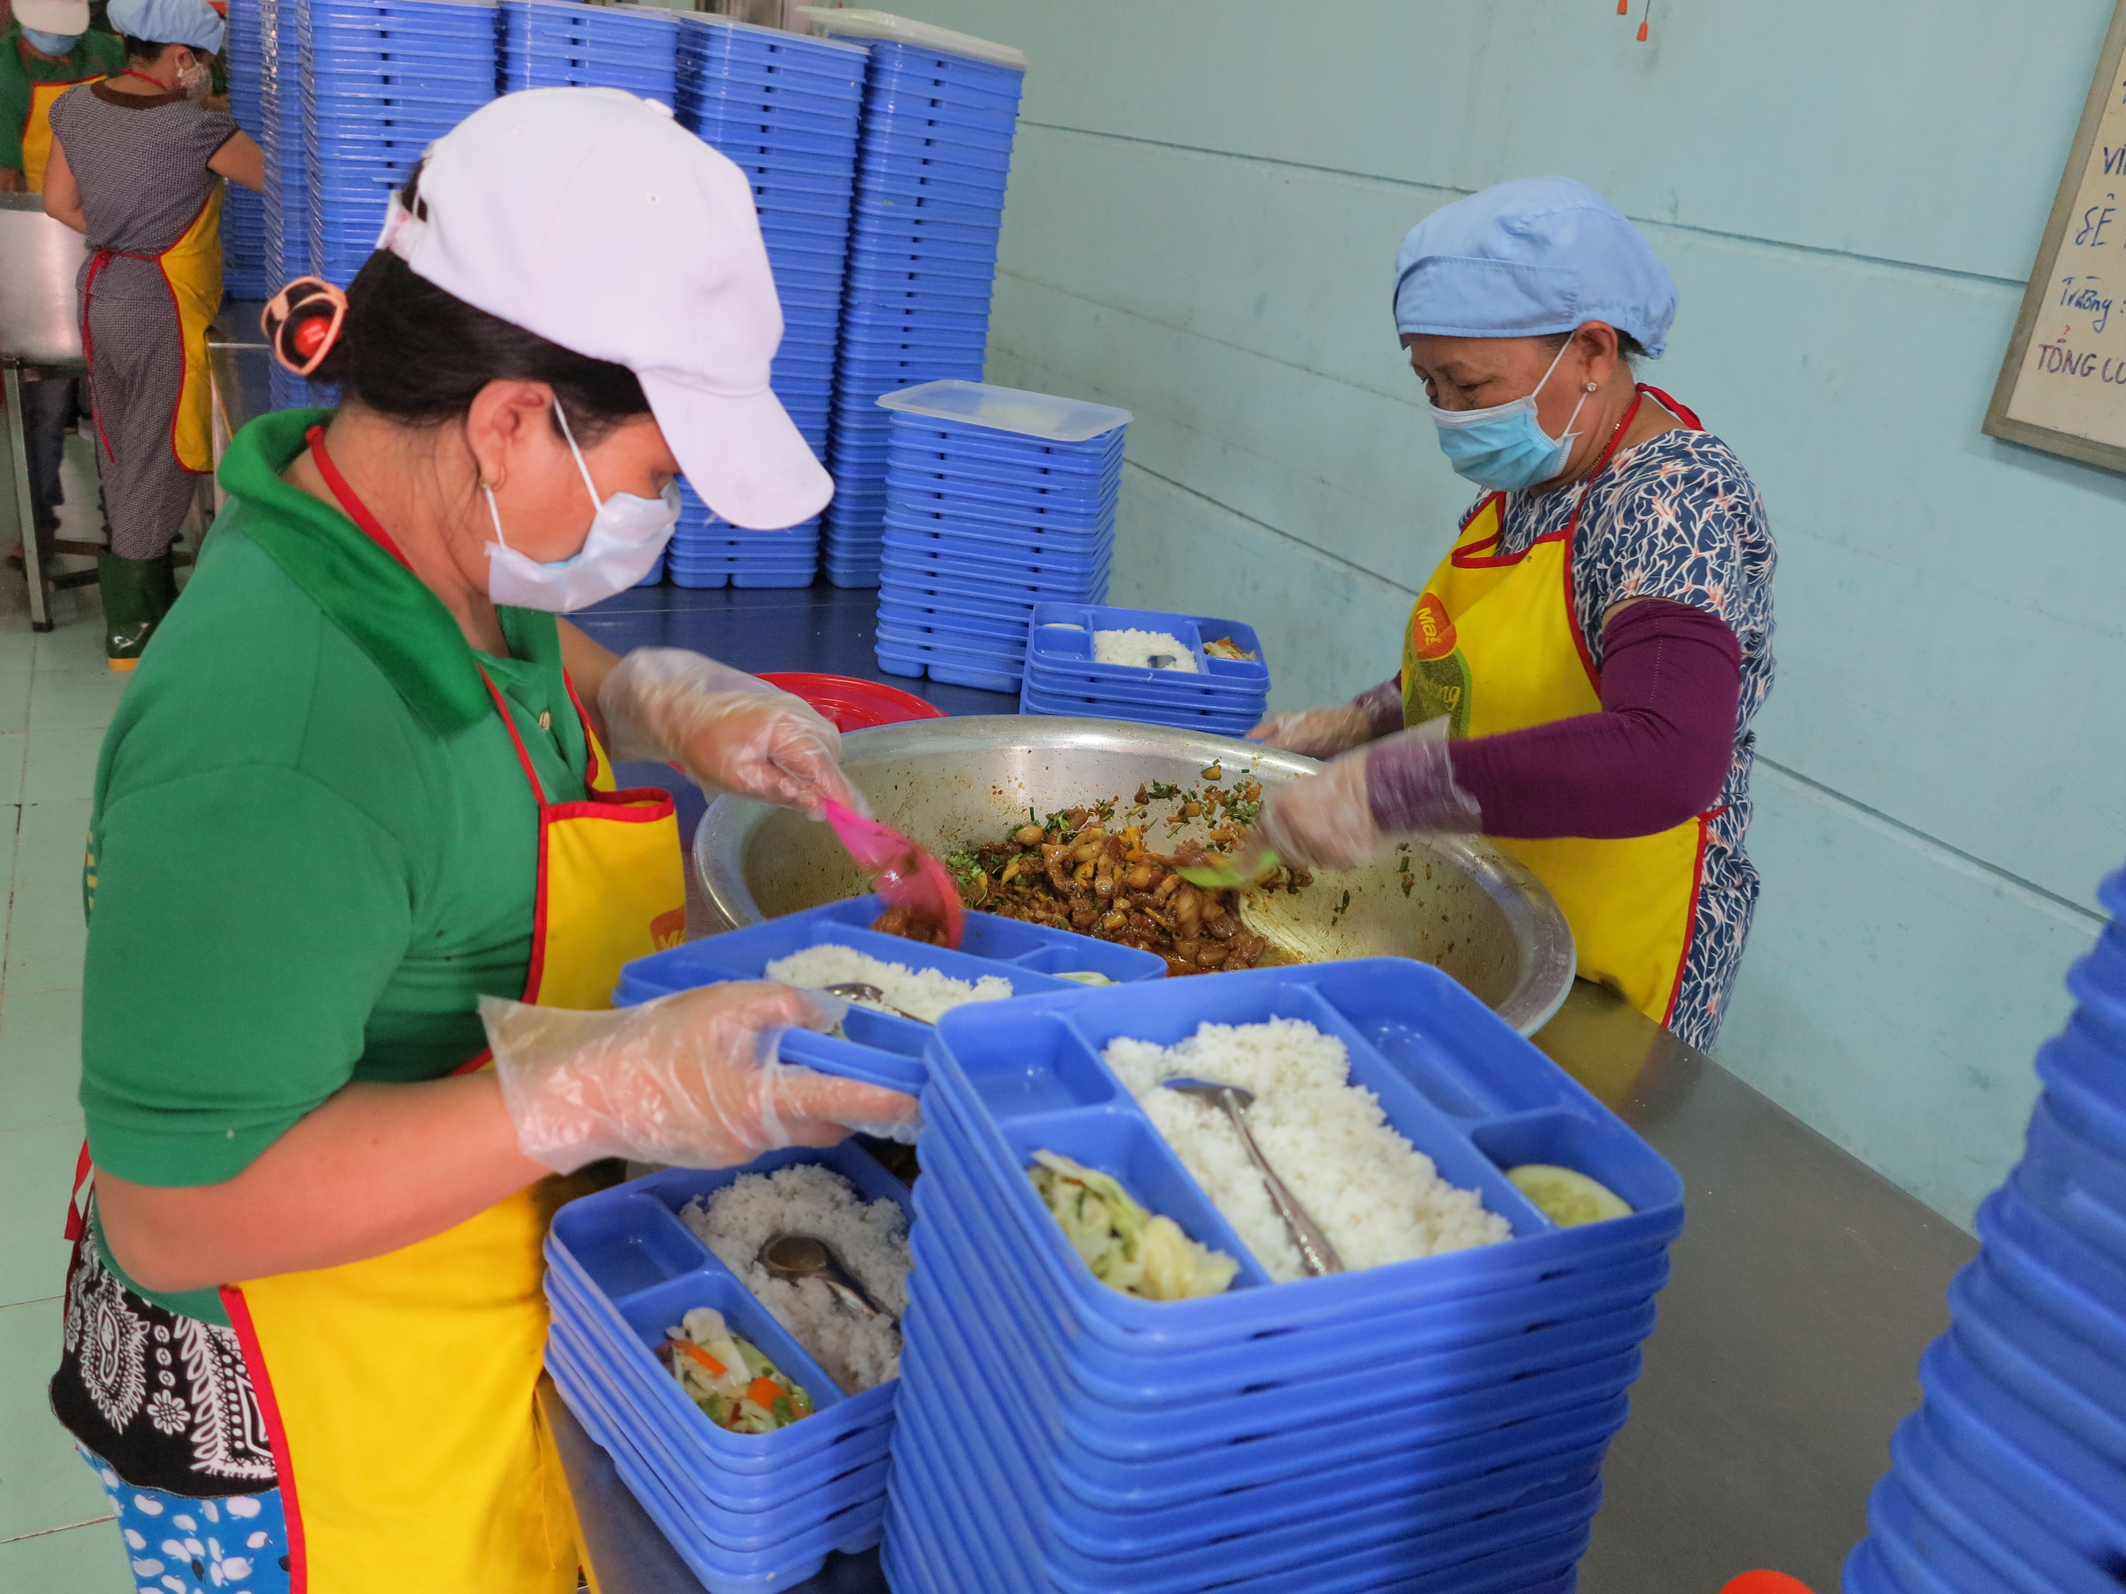 Đoàn thanh tra ATVSTP kiểm tra tại một cơ sở kinh doanh ăn uống tại Đà Nẵng - Ảnh: Diệu Hiền